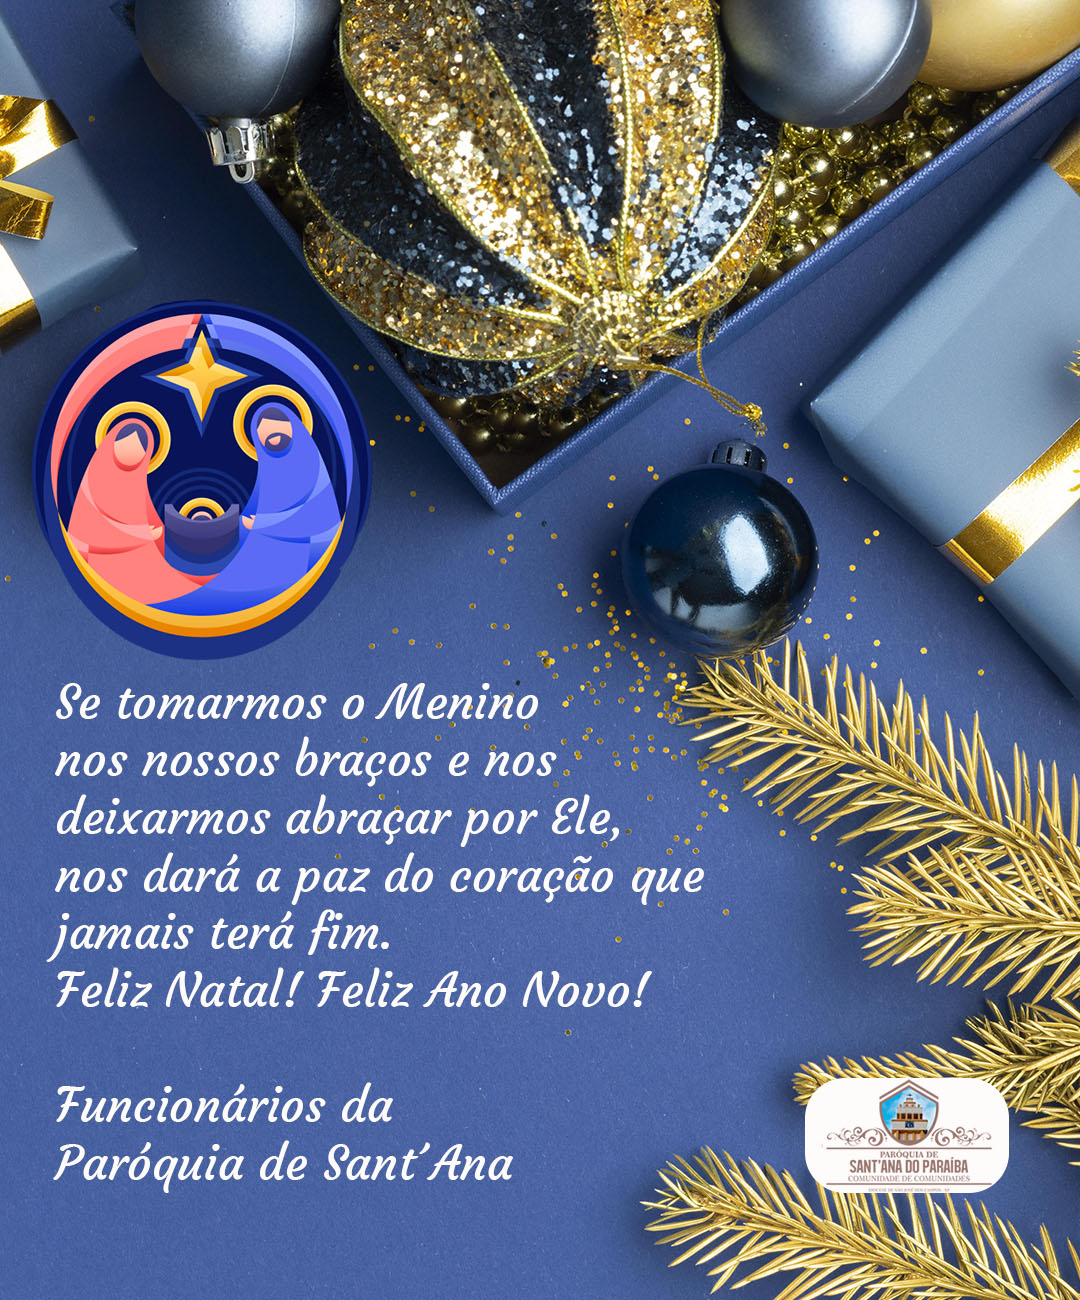 Mensagem de Natal e Ano Novo | Funcionários da Paróquia de Sant´Ana –  Paróquia de Sant'Ana do Paraíba